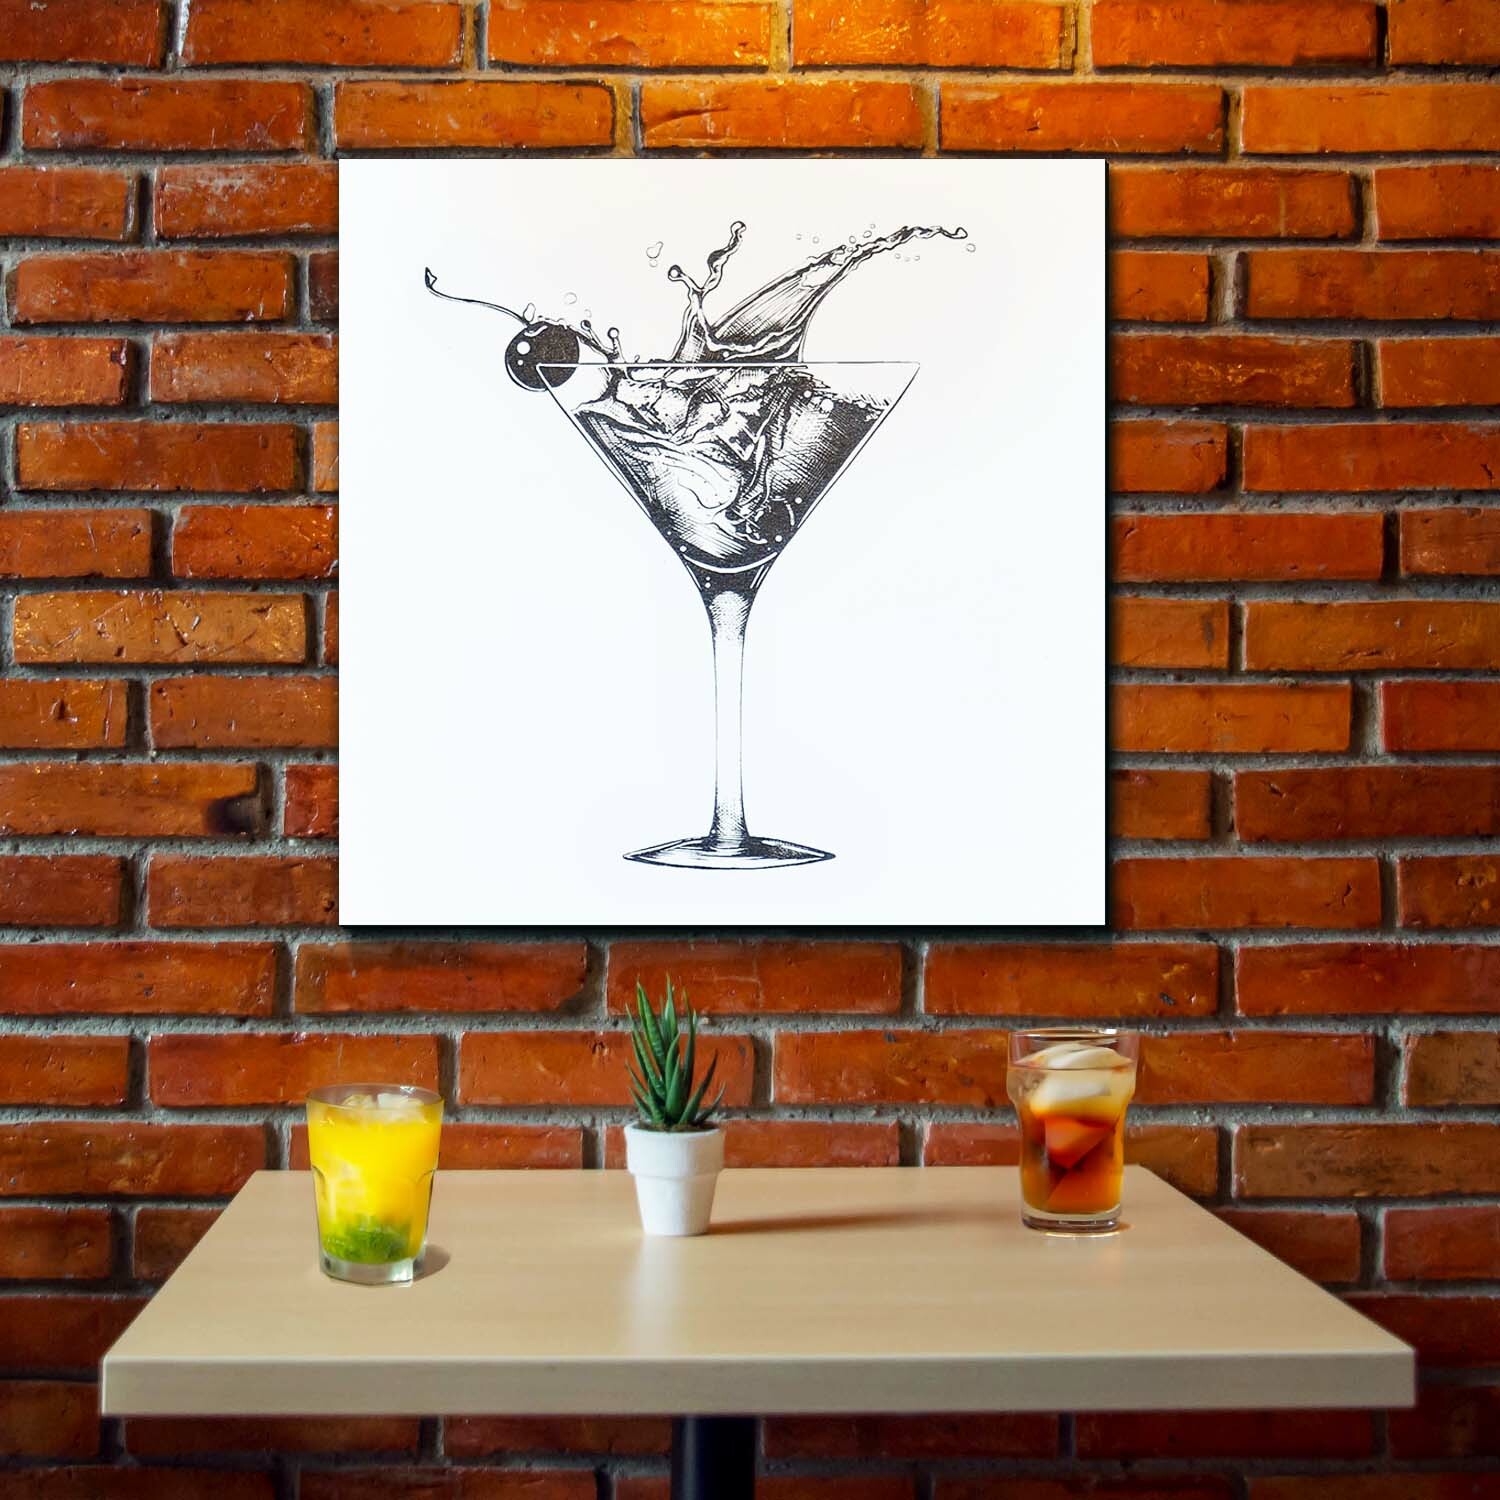 Drevený gravírovaný obraz do baru - Koktail | DUBLEZ